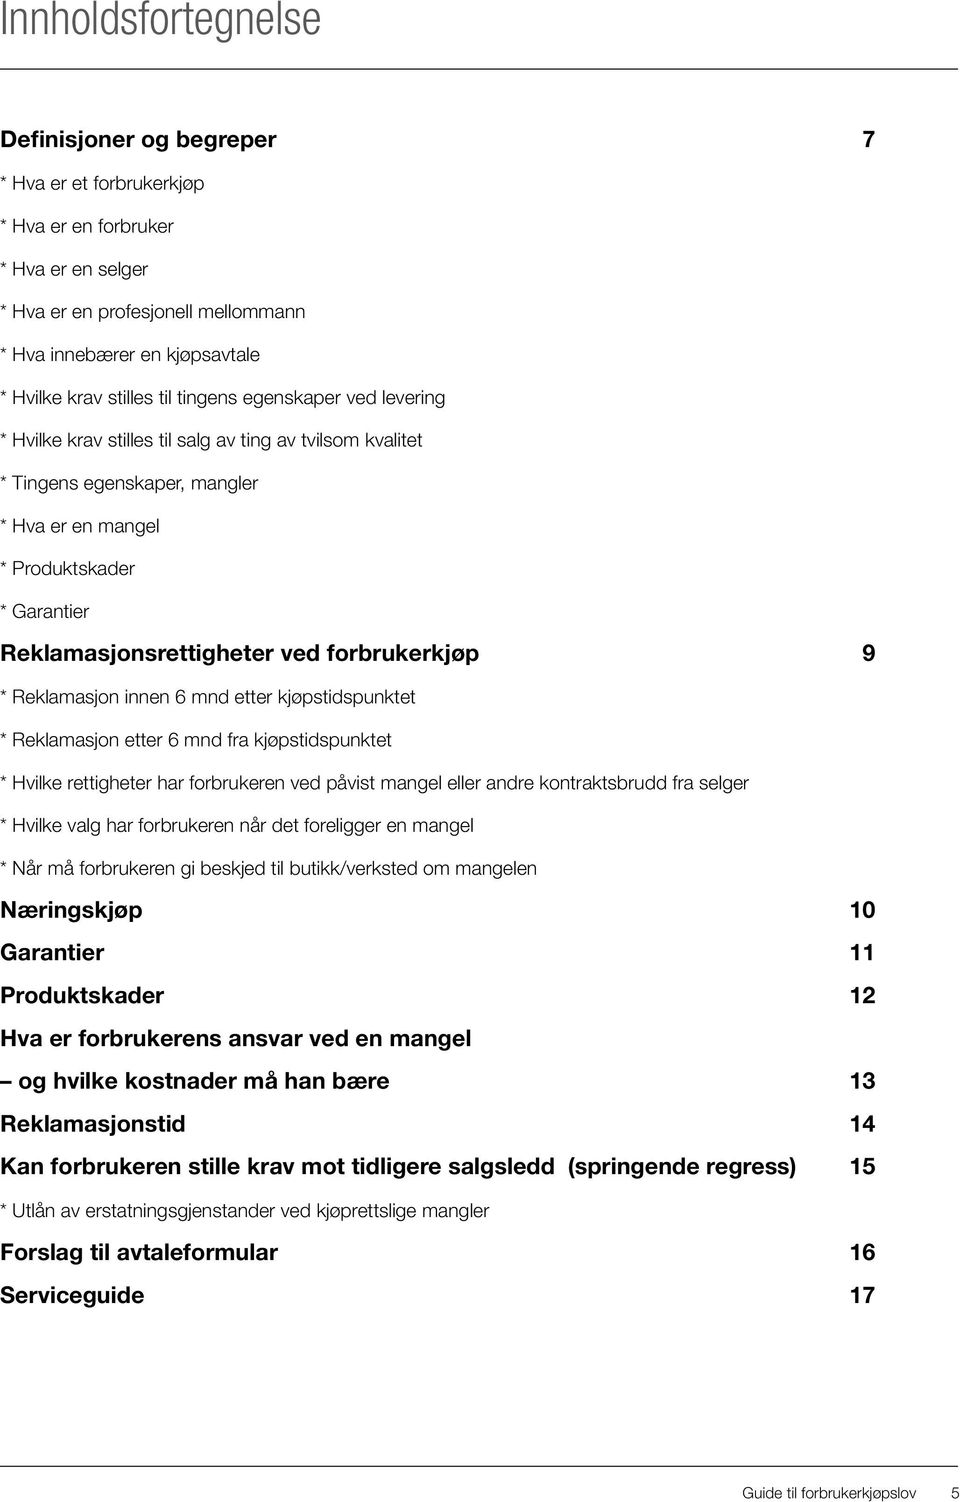 Guide til forbrukerkjøpslov Serviceguide - PDF Free Download